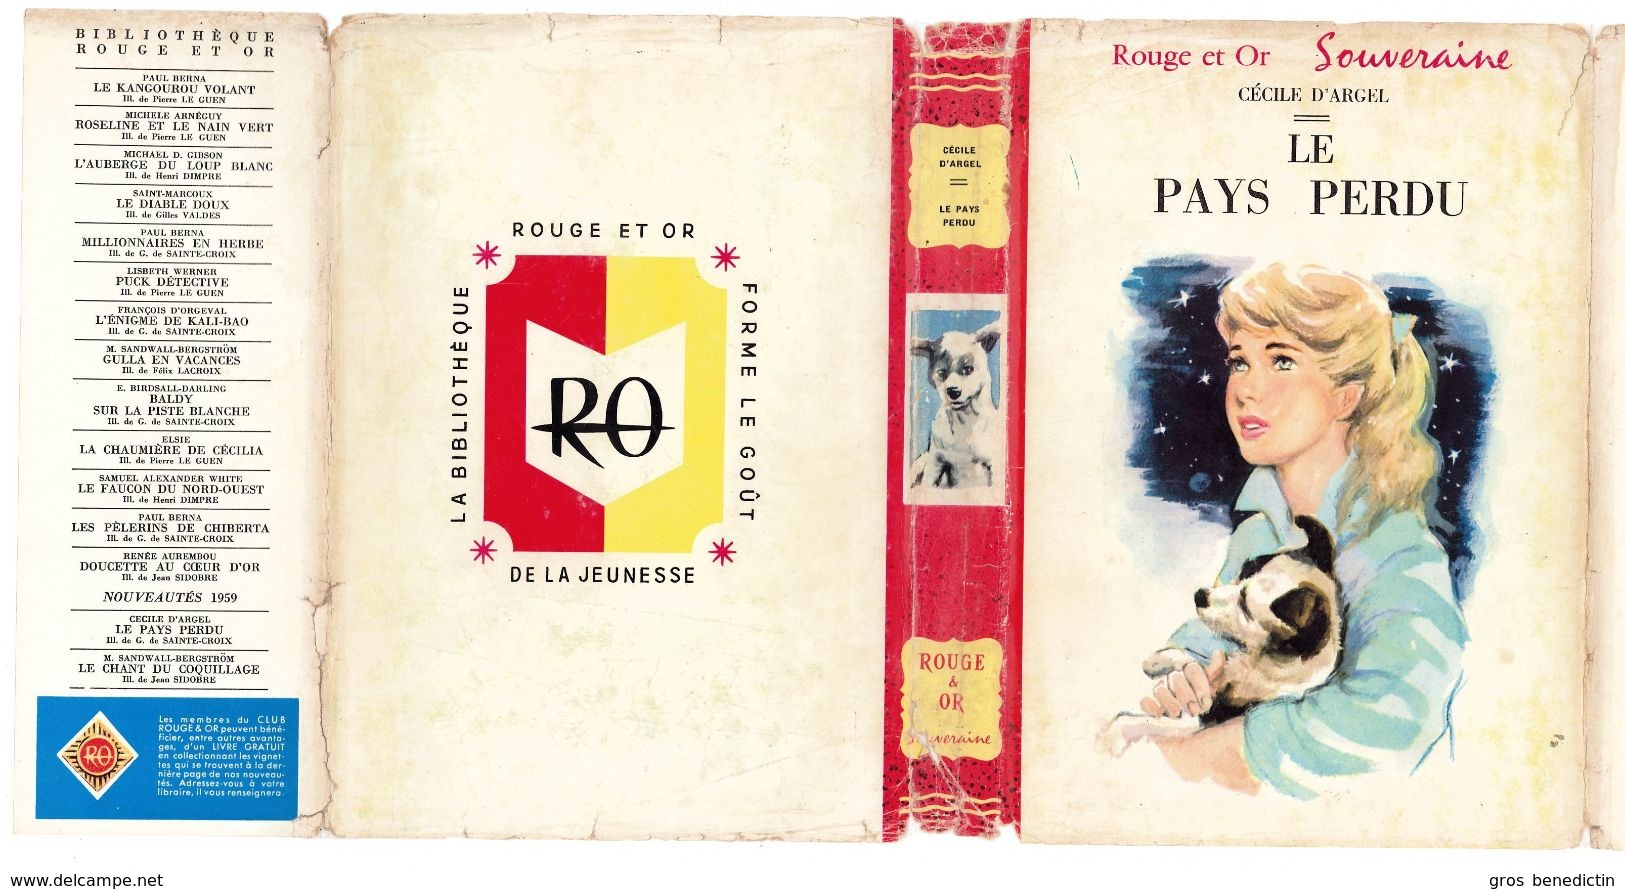 G.P. Rouge Et Or Souveraine N°135 - Cécile D'Argel - "Le Pays Perdu" - 1959 - #Ben&Souv&Div - Bibliothèque Rouge Et Or